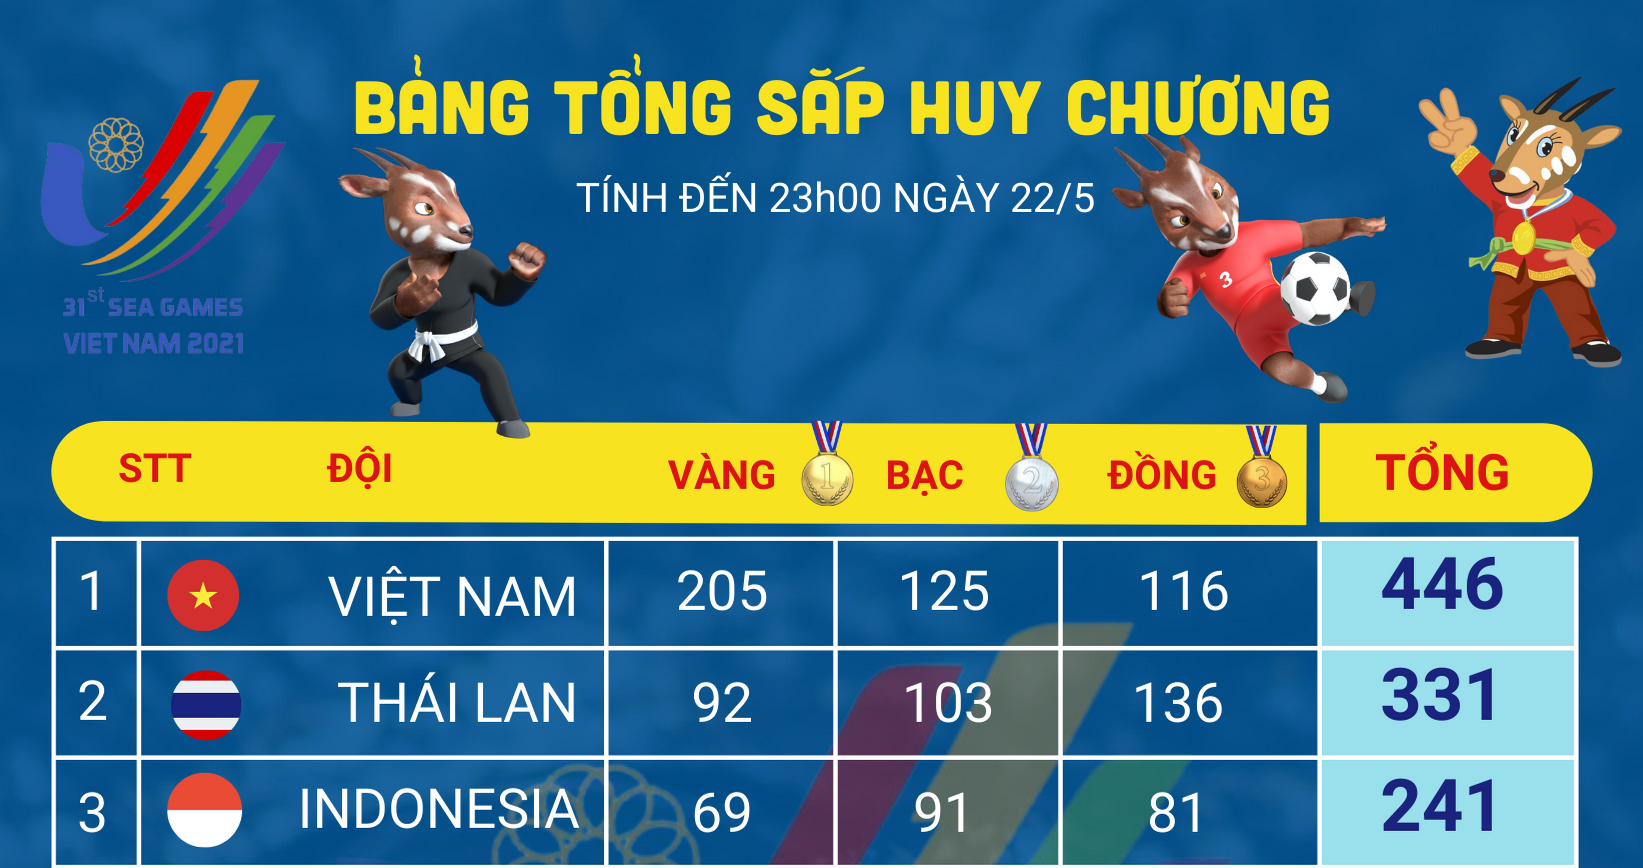 [Infographics] Bảng tổng sắp huy chương SEA Games 31 ngày 22/5: Xin chúc mừng đội tuyển U23 Việt Nam giành HCV